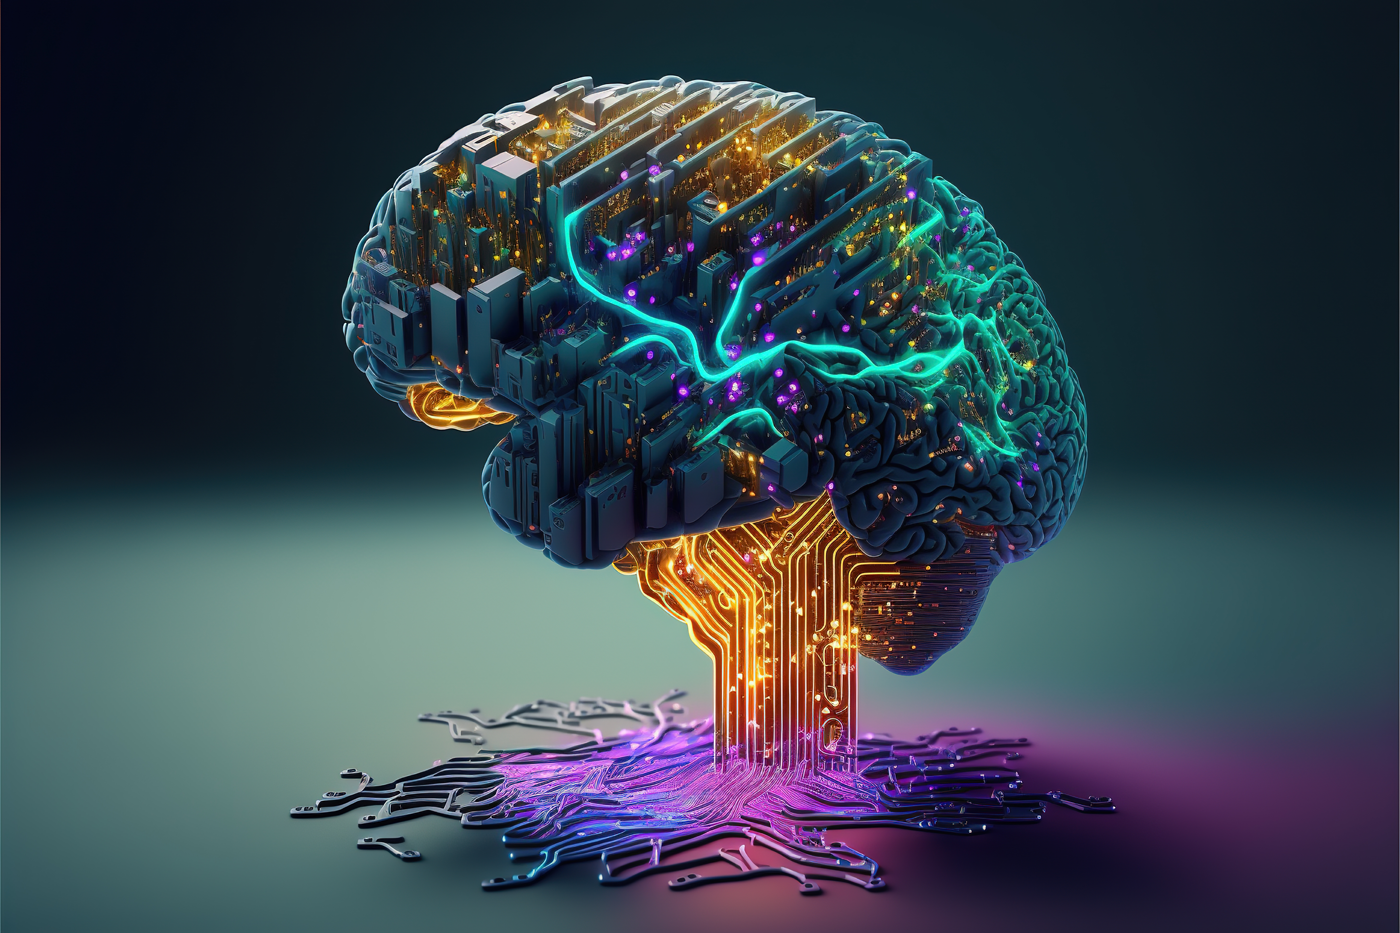 3- بناء مشاريع التعلم الآلي - DeepLearning AI
أفضل 7 دورات تدريبية مجانية عبر الإنترنت في مجال الذكاء الاصطناعي من أفضل الشركات والجامعات
